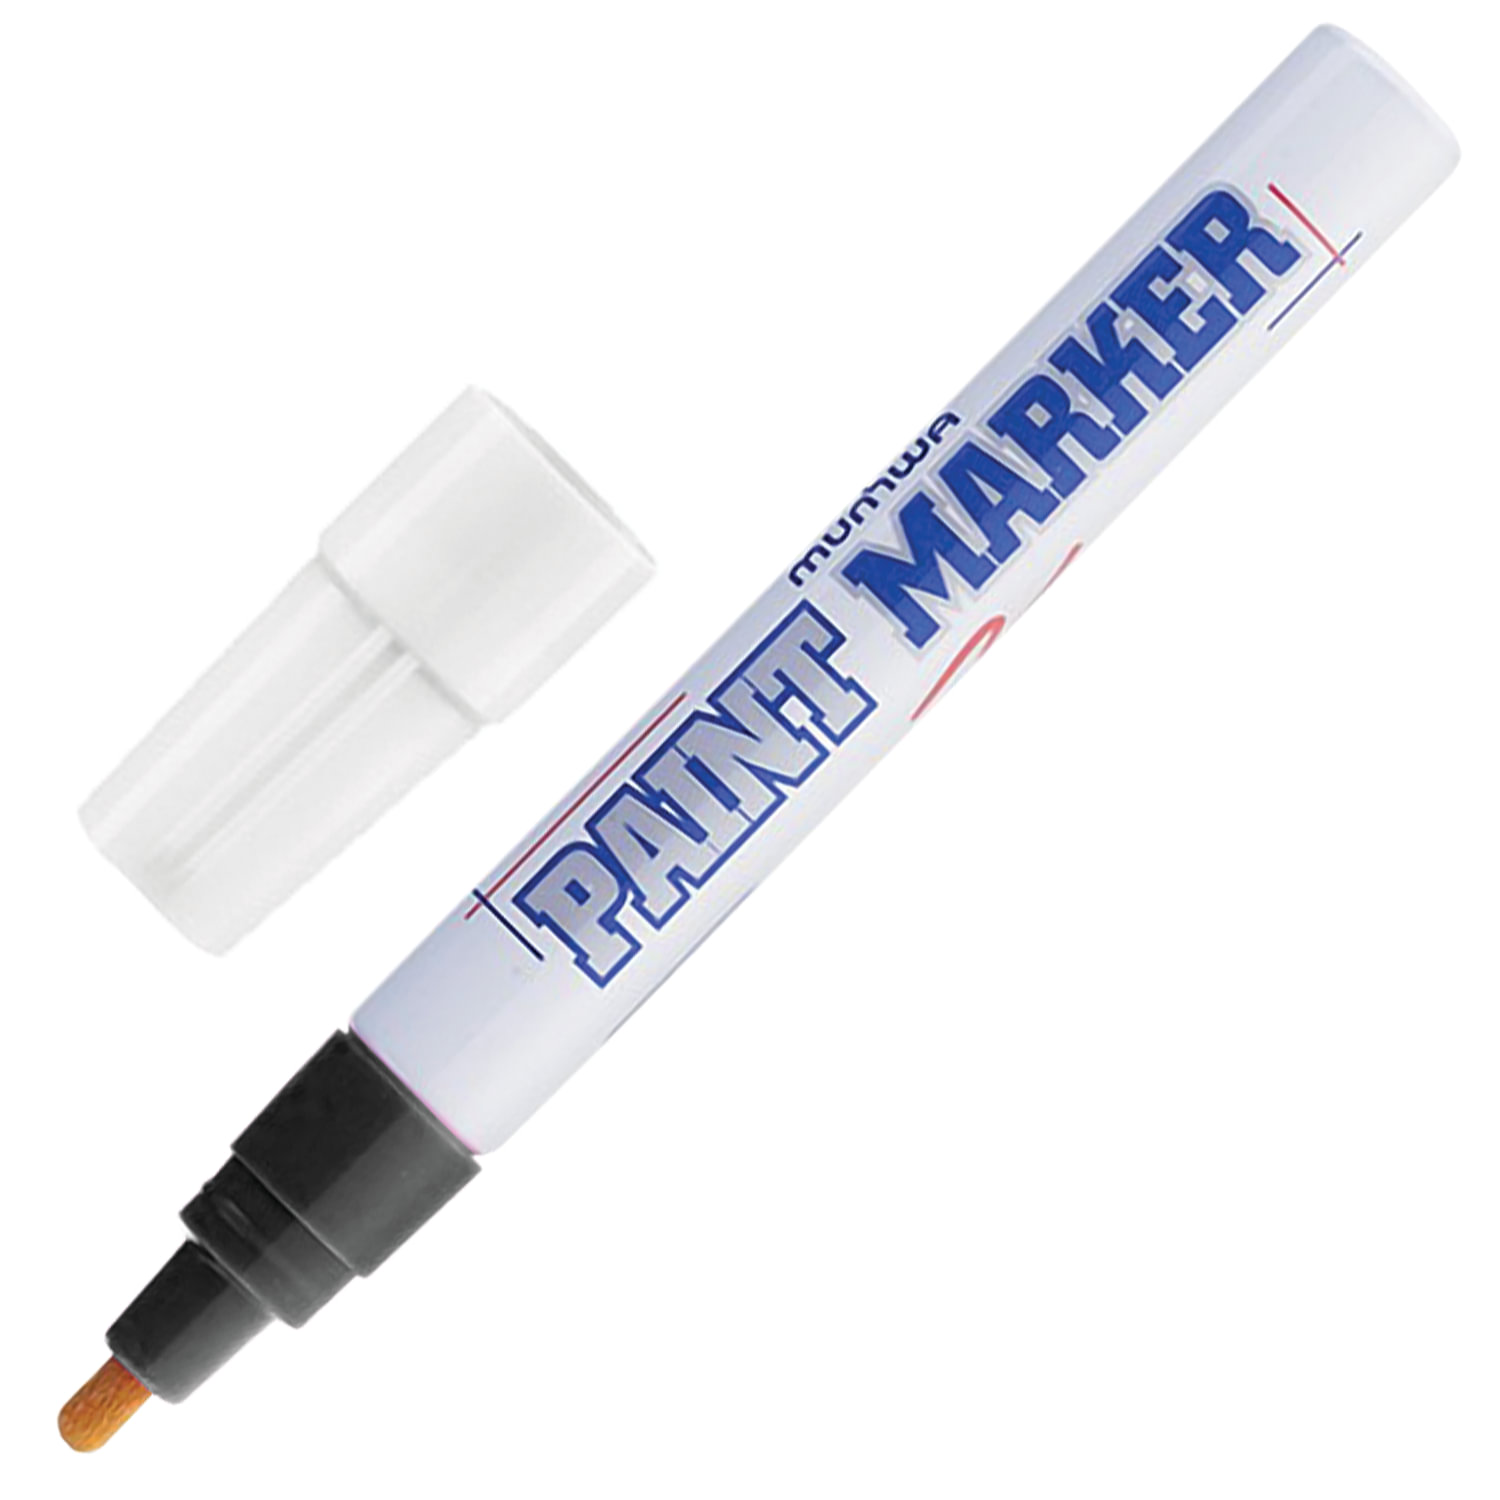 Маркер-краска лаковый (paint marker) MUNHWA, 4 мм, ЧЕРНЫЙ, нитро-основа, алюминиевый корпус, PM-01 купите по выгодной цене